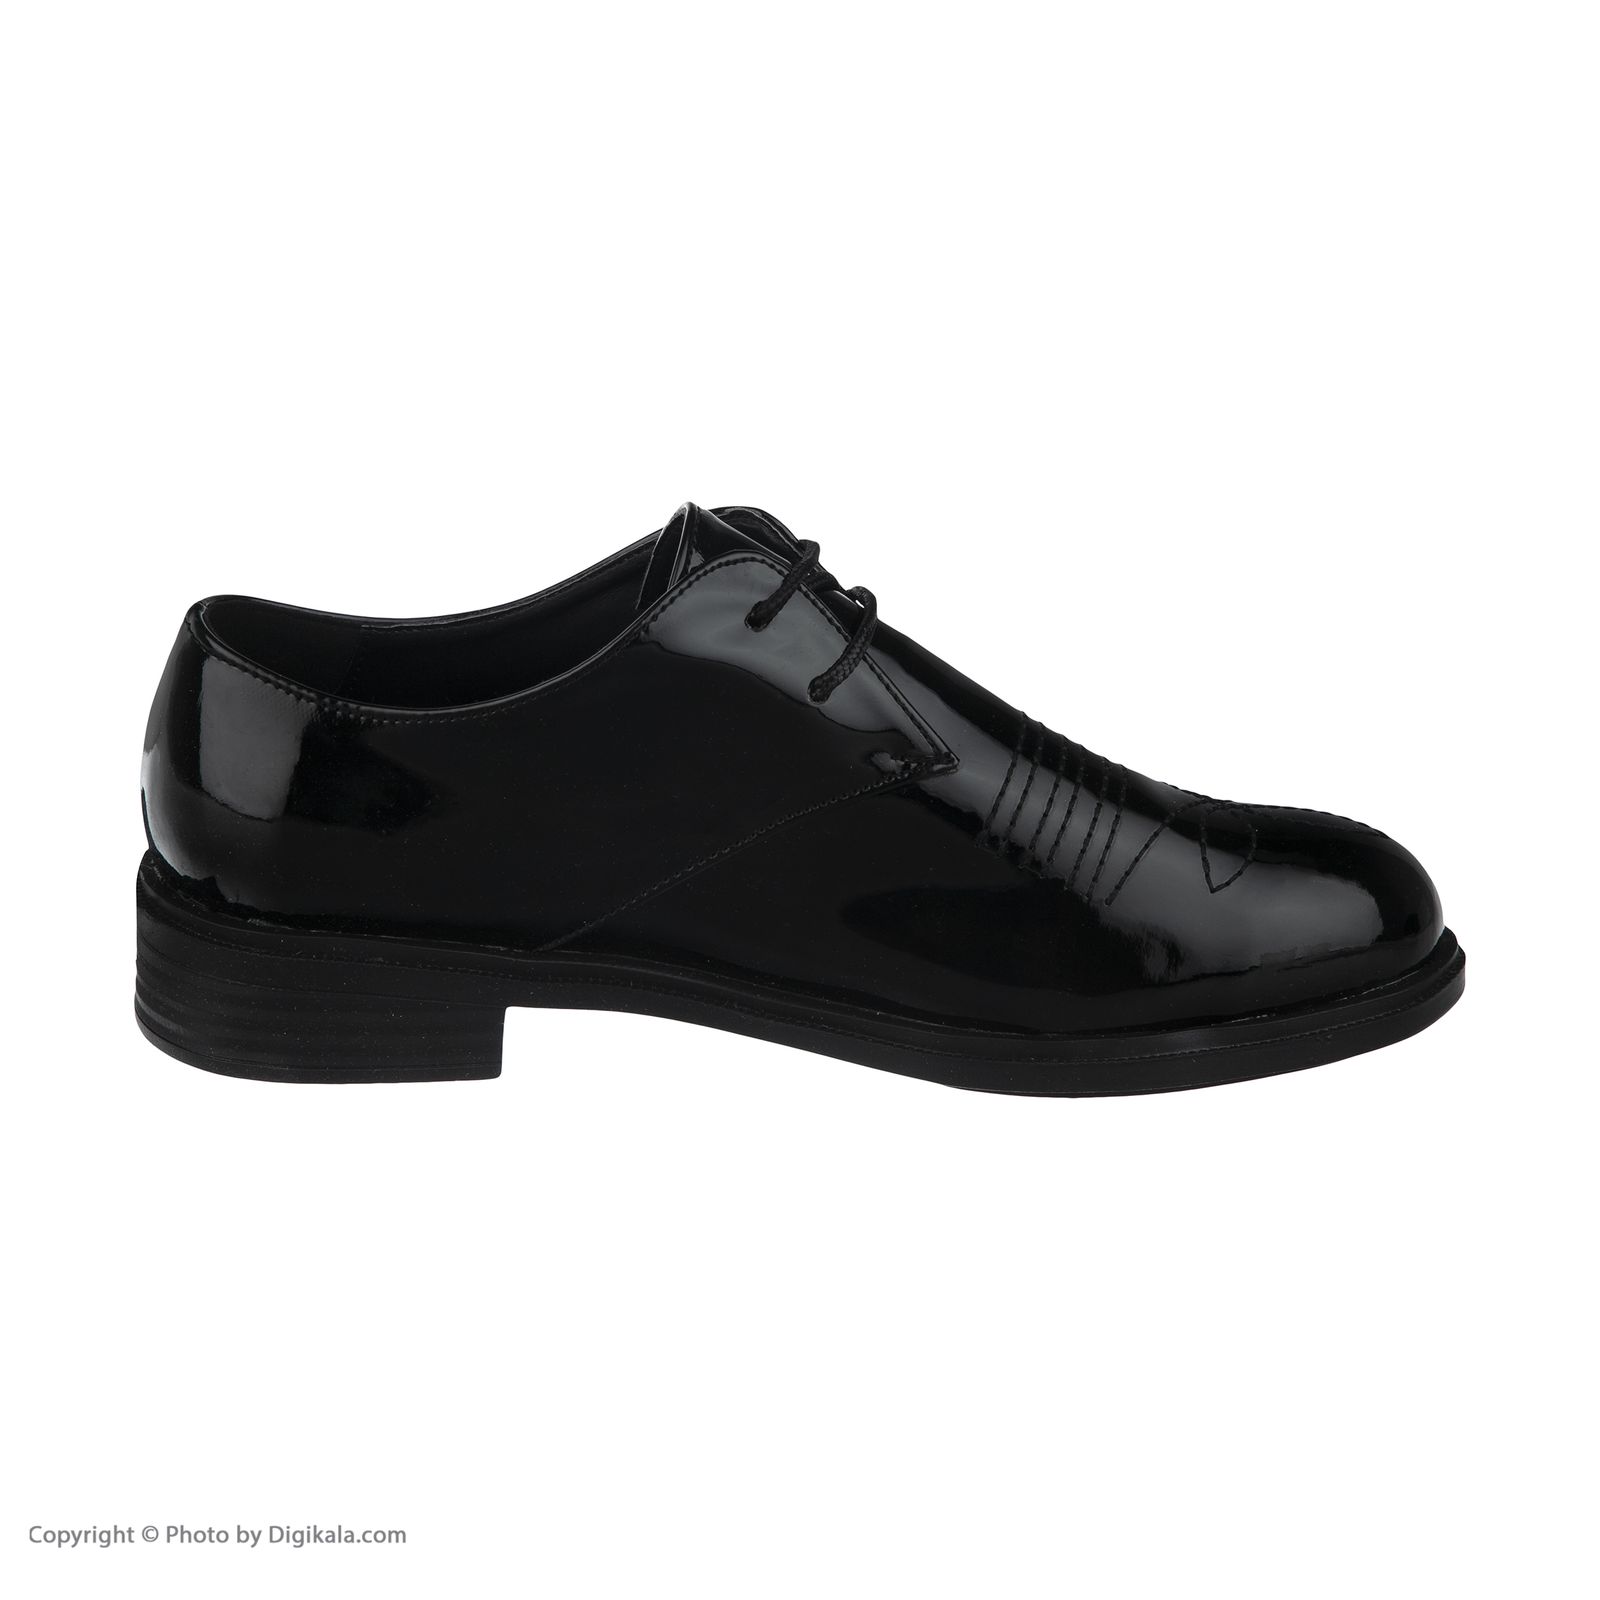  کفش مردانه لبتو مدل 1058-99 -  - 3